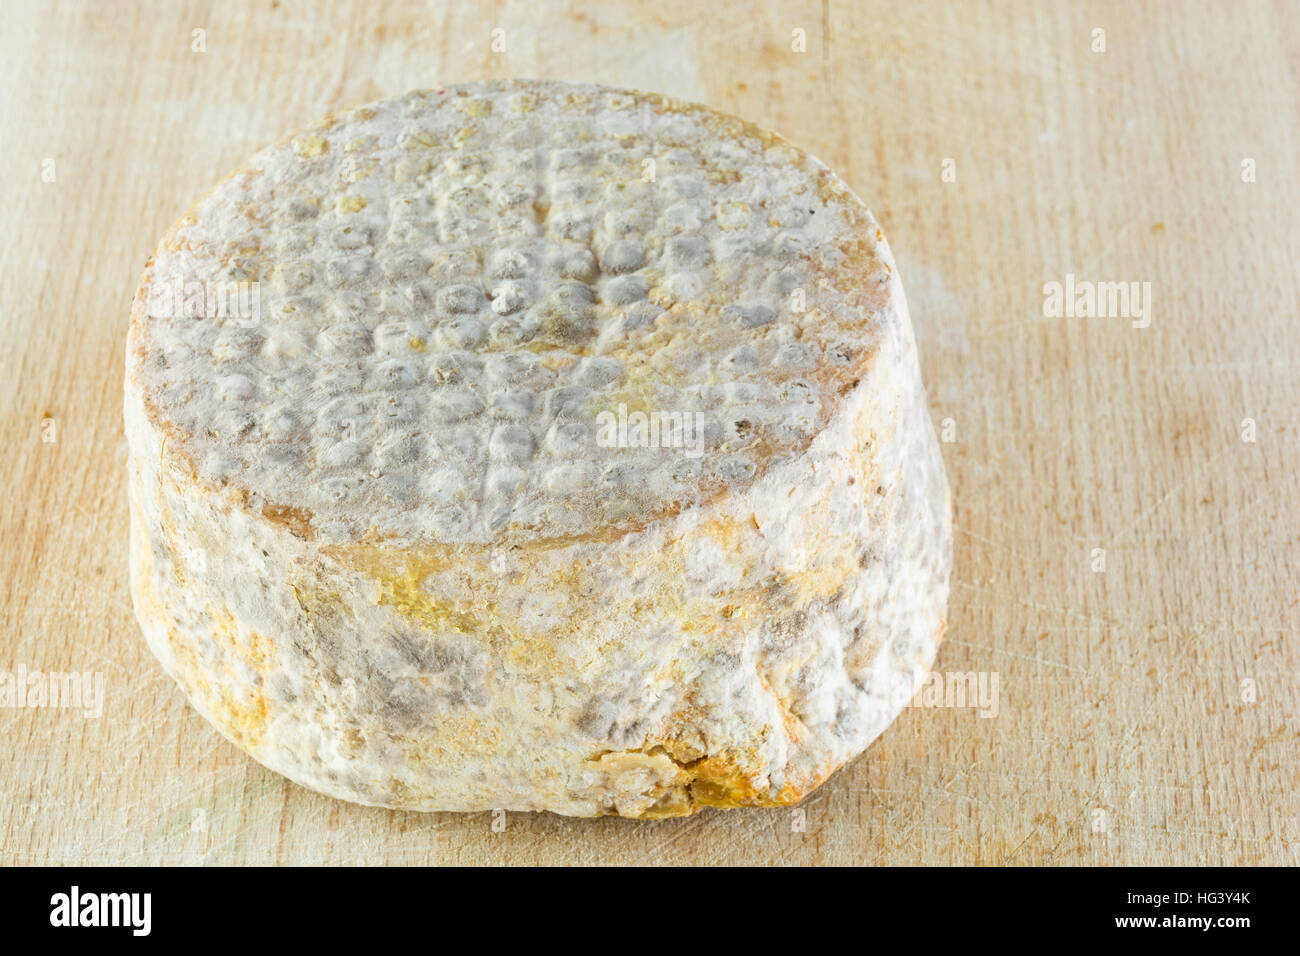 La forma di formaggio a pasta dura di una crosta bloomy latte di capra, il gelo crosta, di trattamento attraverso un apposito stampo del genere Penicillium, come Penicillium camemb Foto Stock